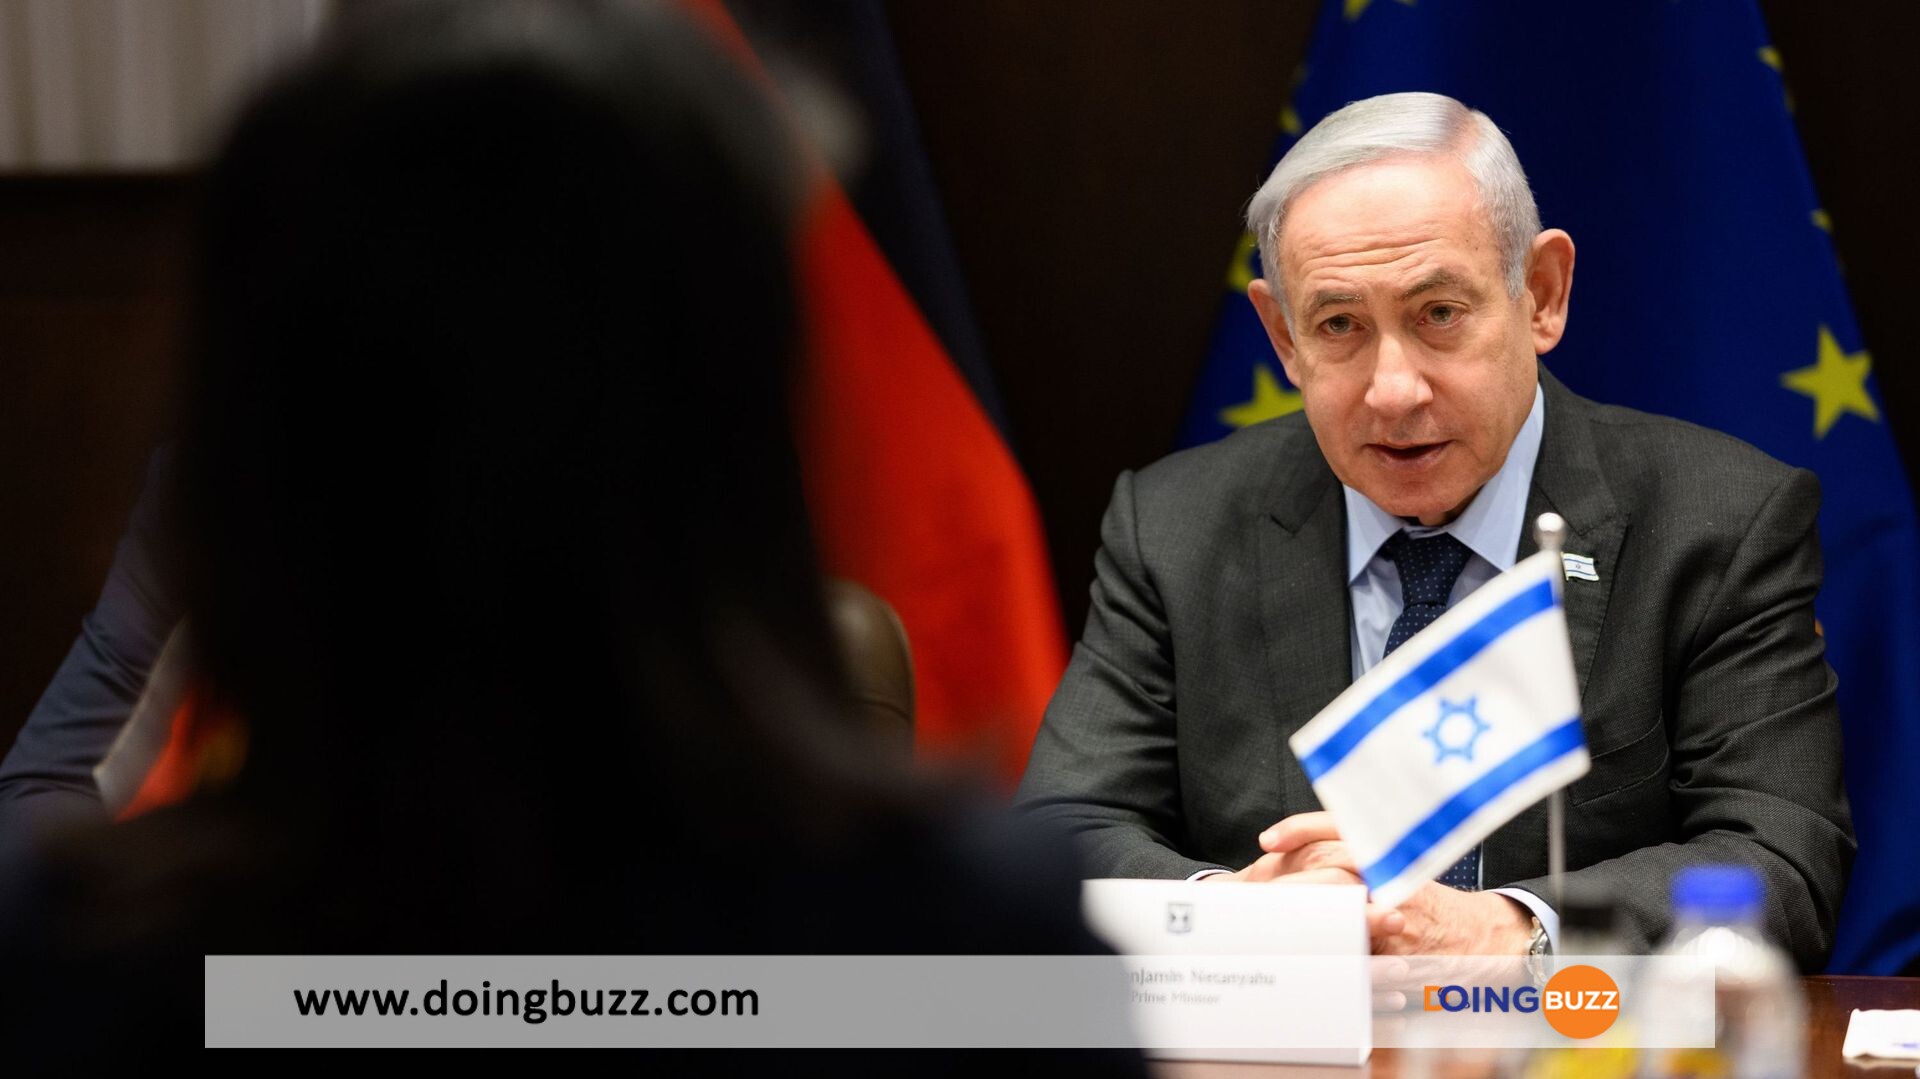 Netanyahu Révèle Son Plan Pour La Bande De Gaza Après La Fin De La Guerre